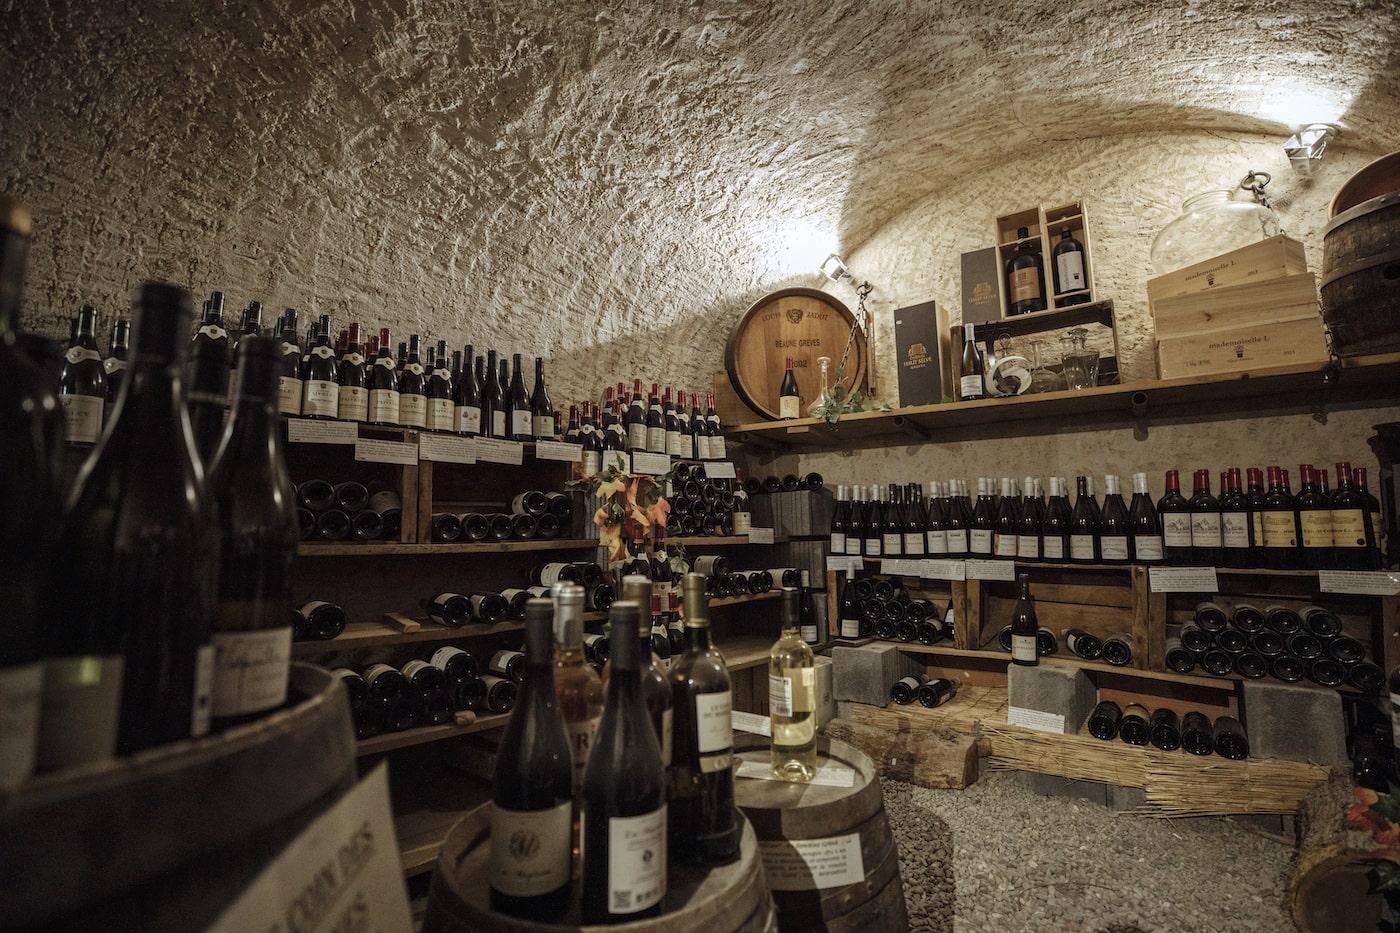 Cave à Seb : Cave à vin, Bières, Epicerie fine, Fromages et Bar à